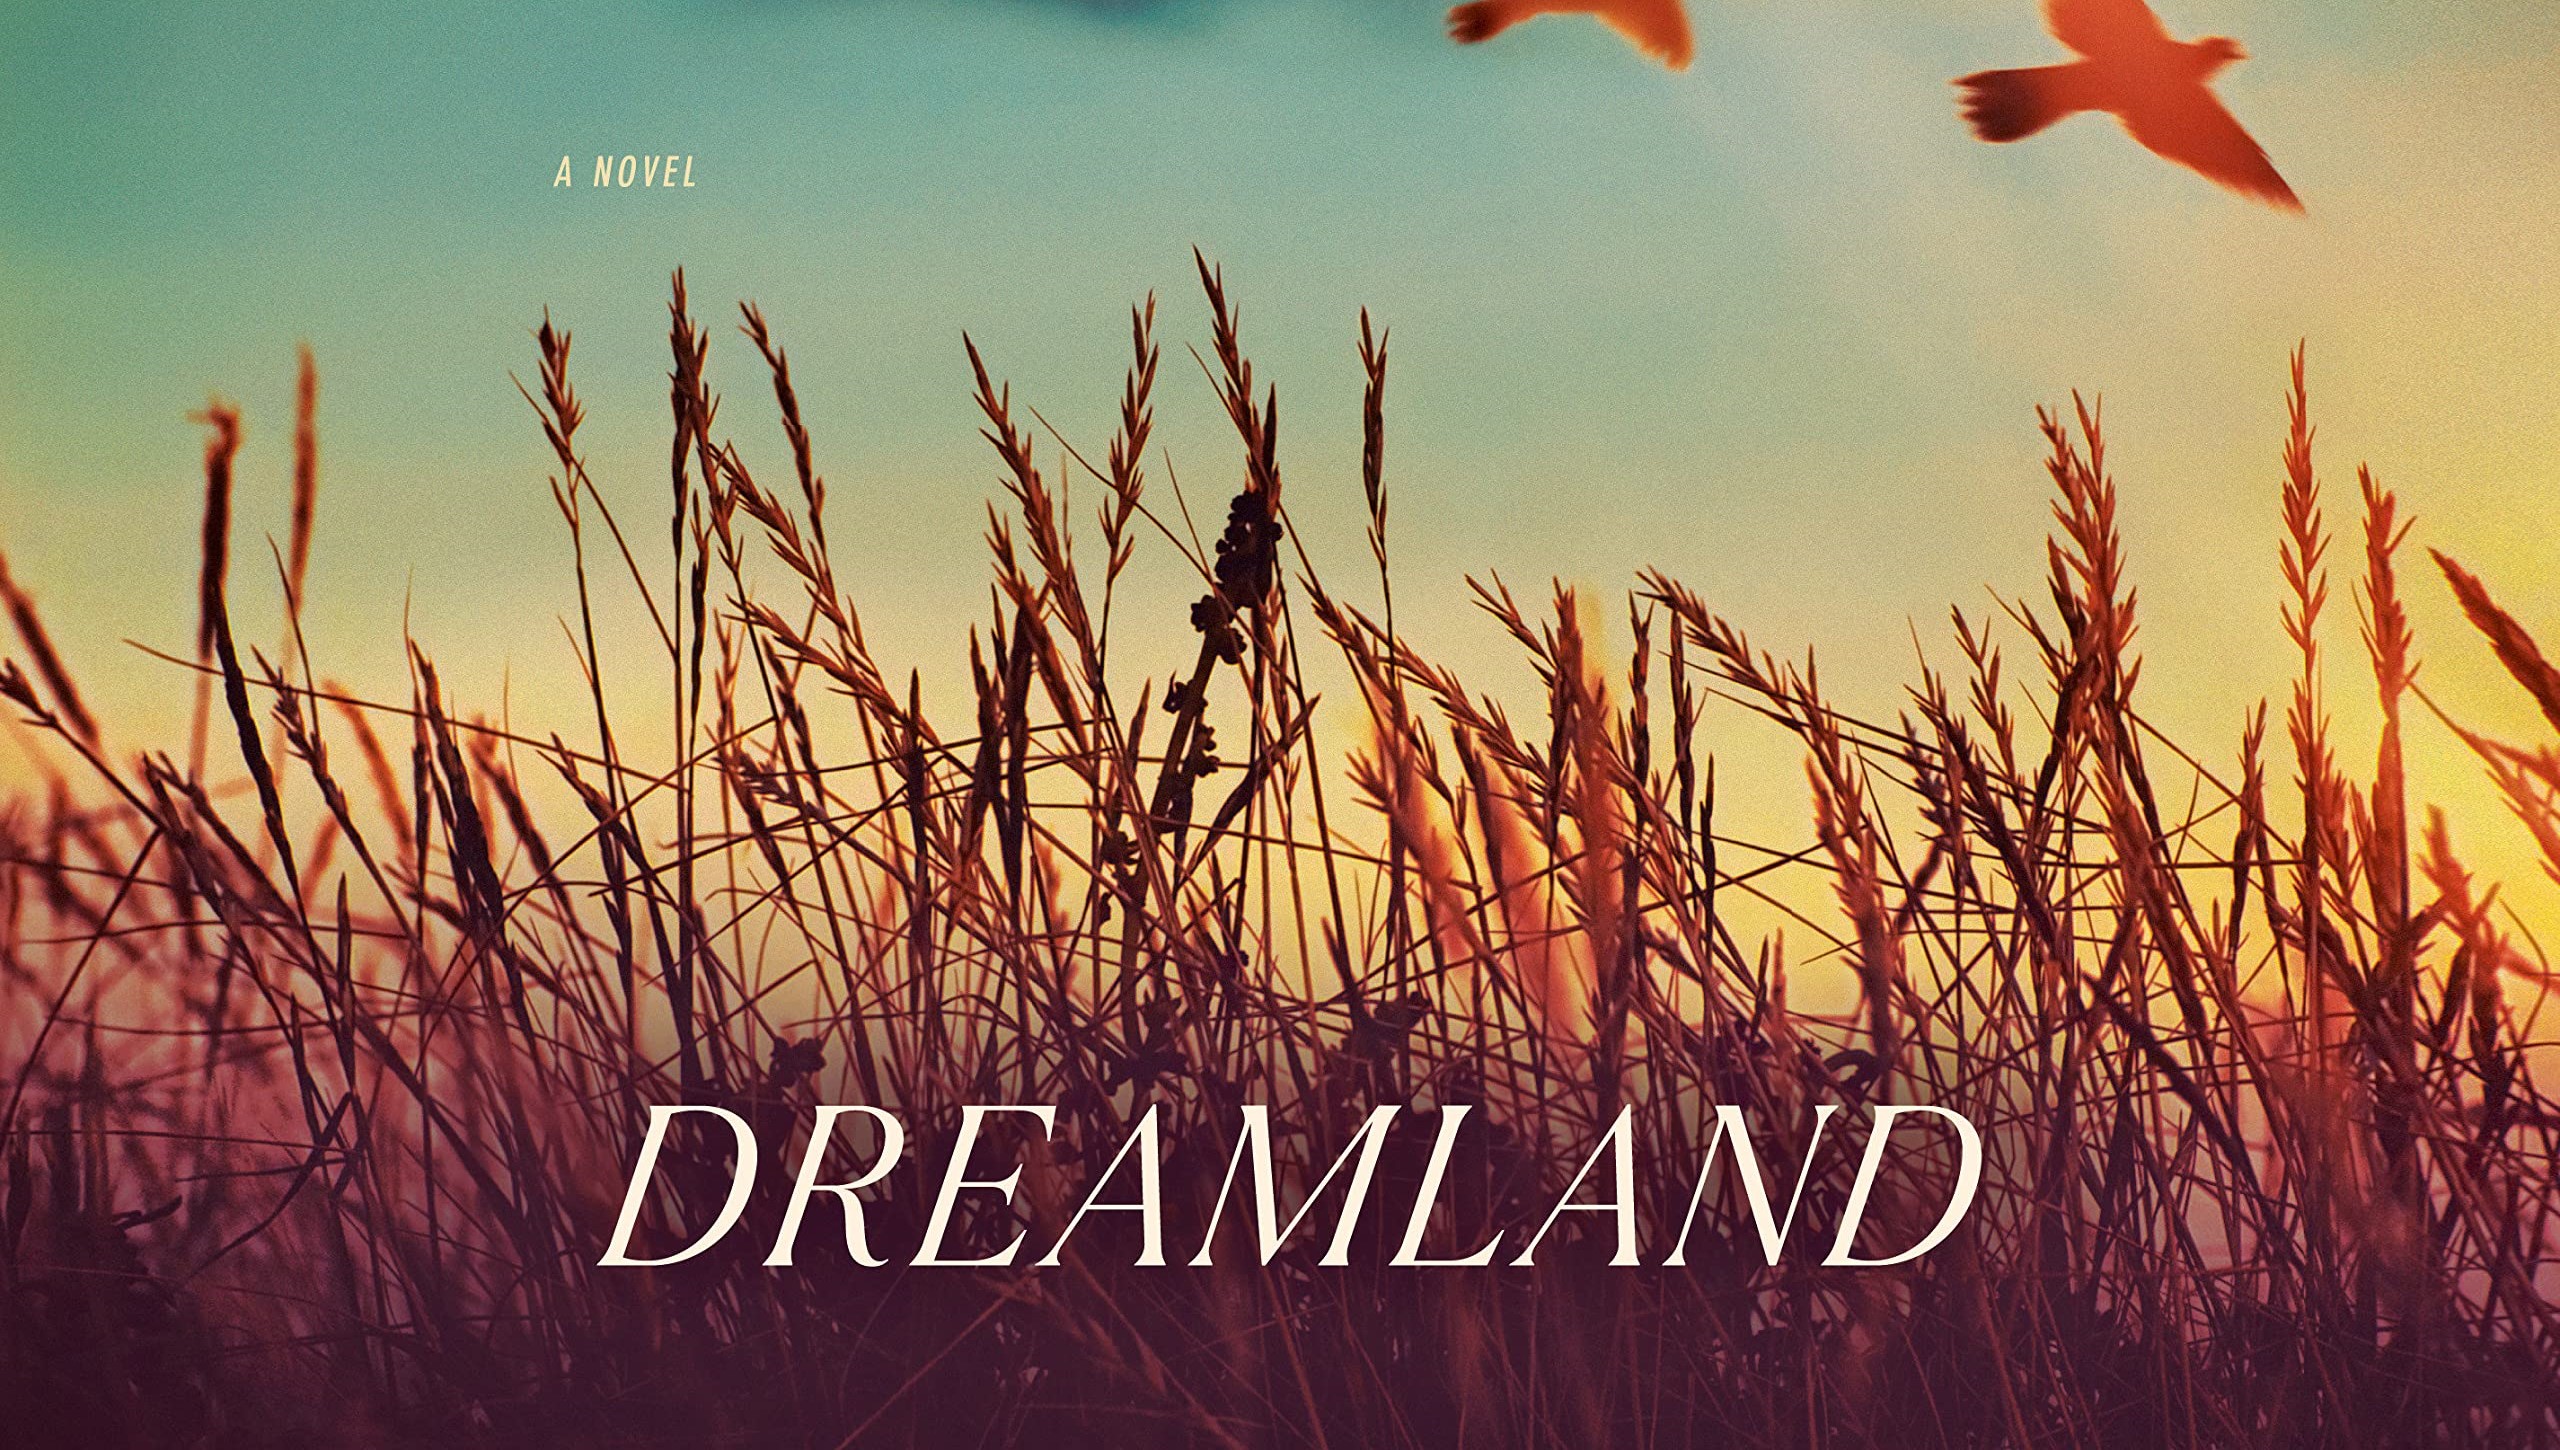 Libri da leggere, Dreamland di Nicholas Sparks il nuovo romanzo in uscita